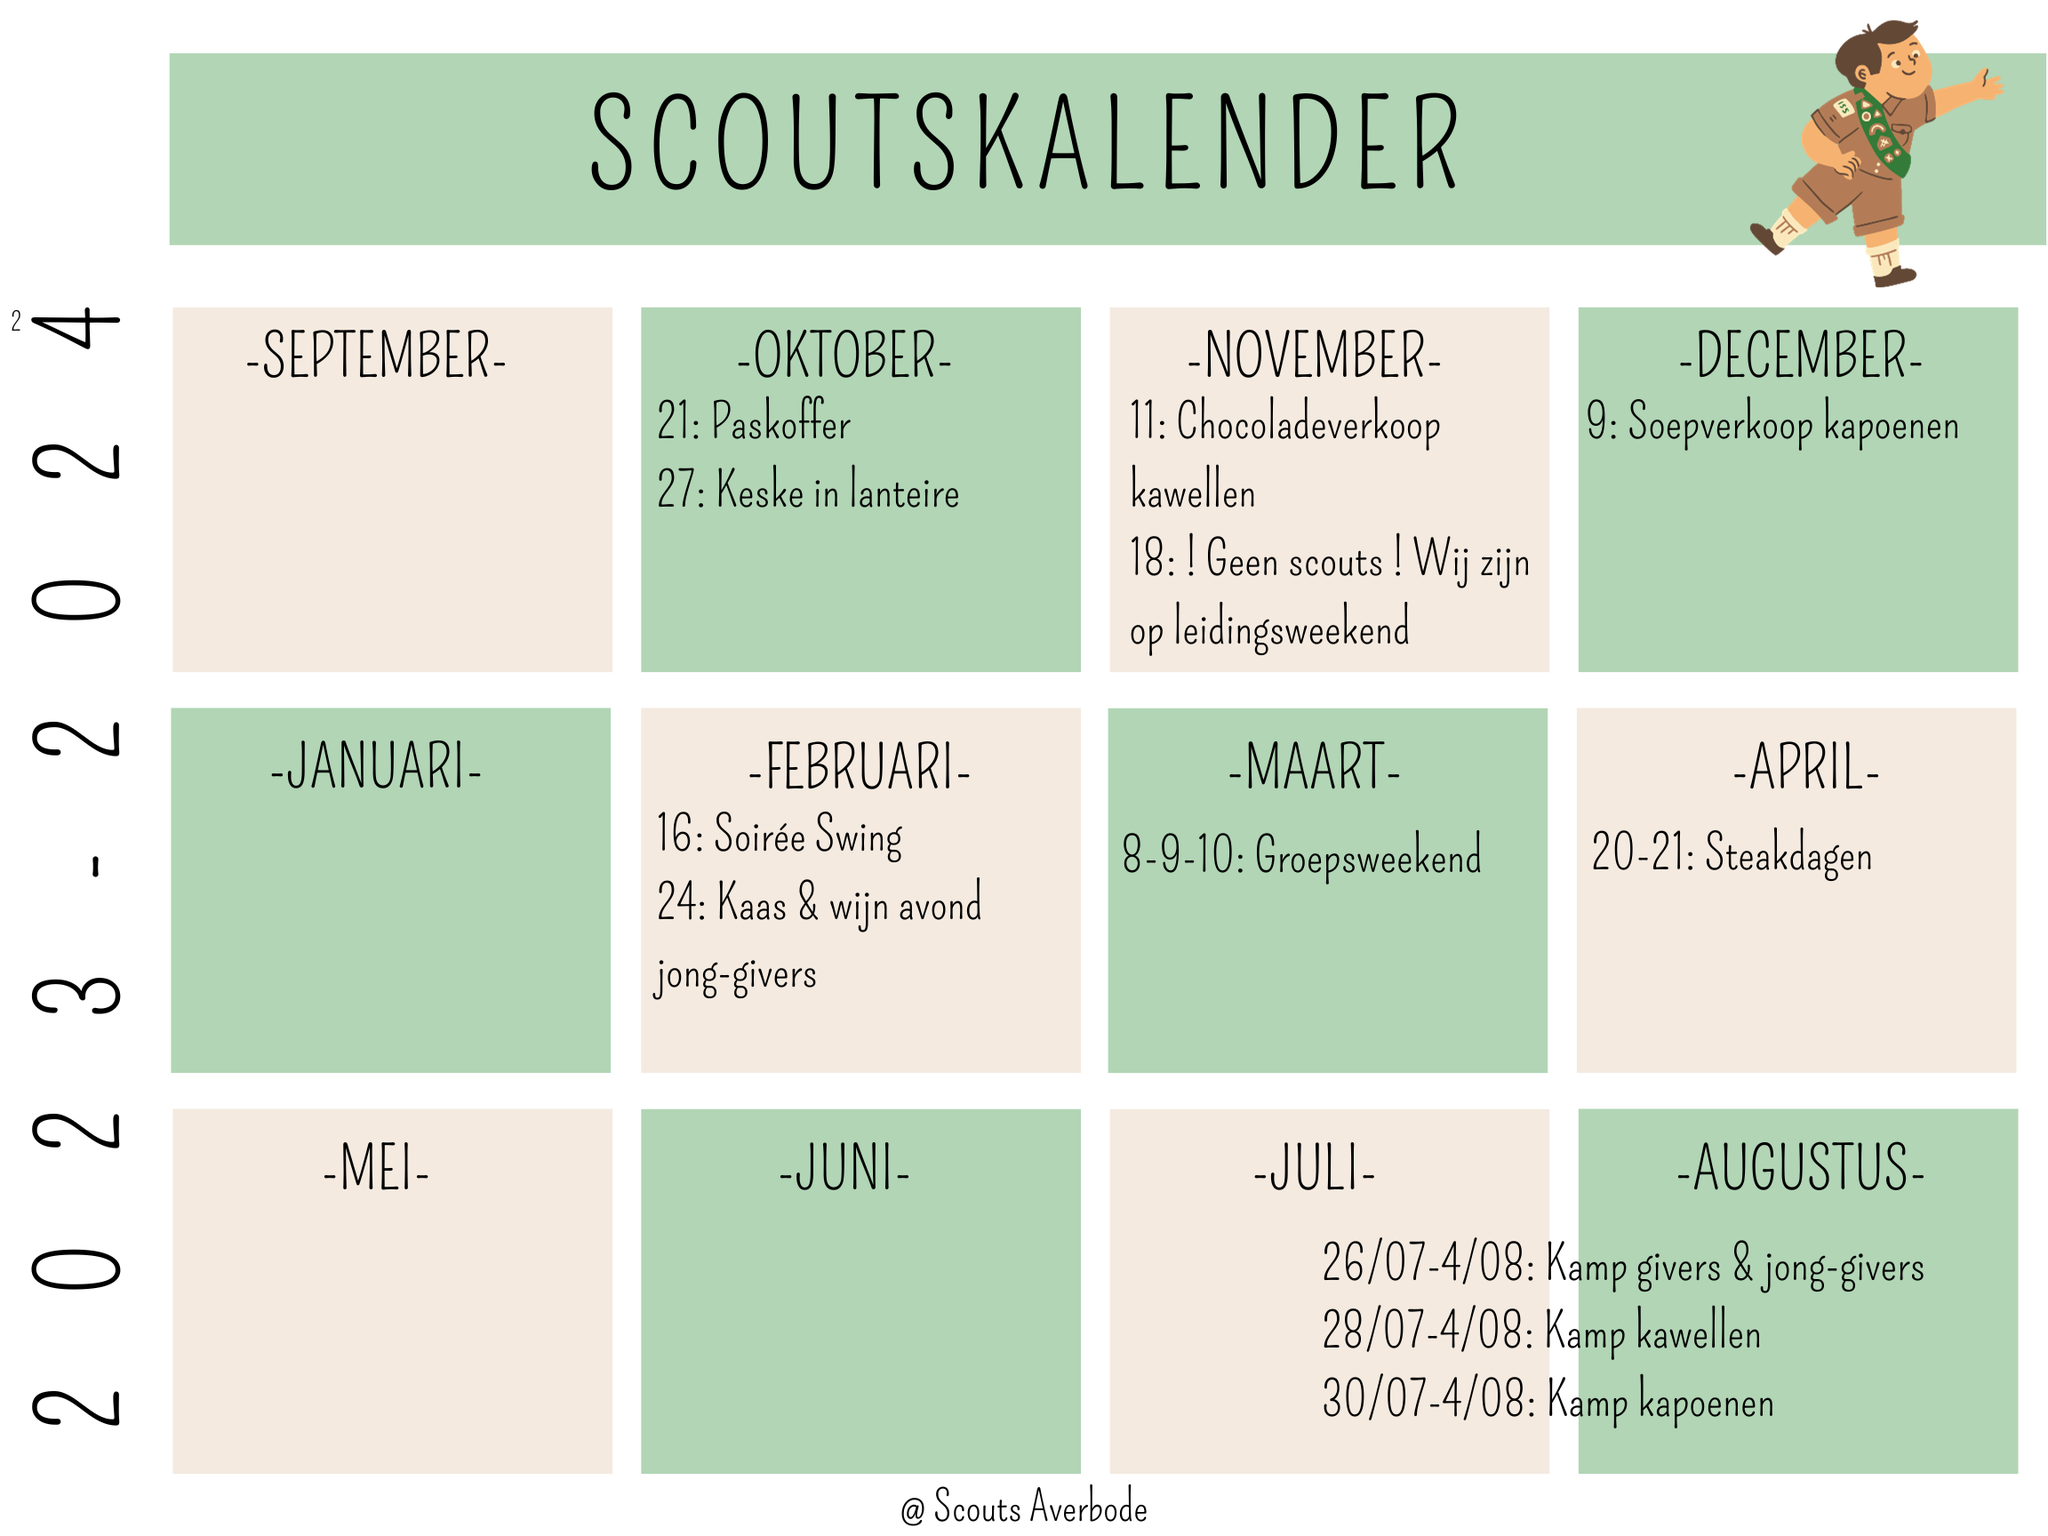 De kalender van scouts averbode